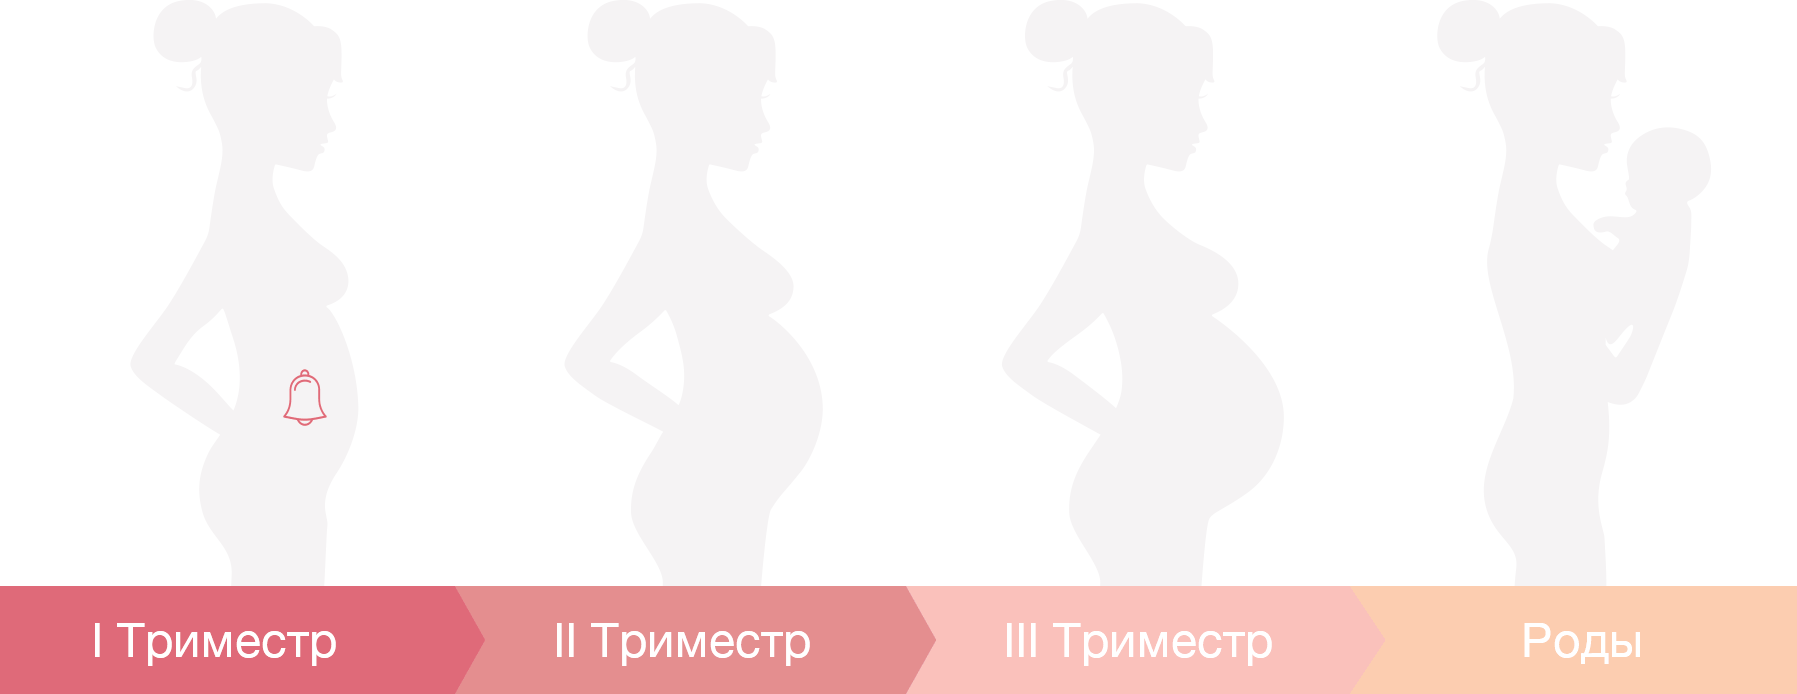 оргазм при беременности первый триместр можно или нет фото 102